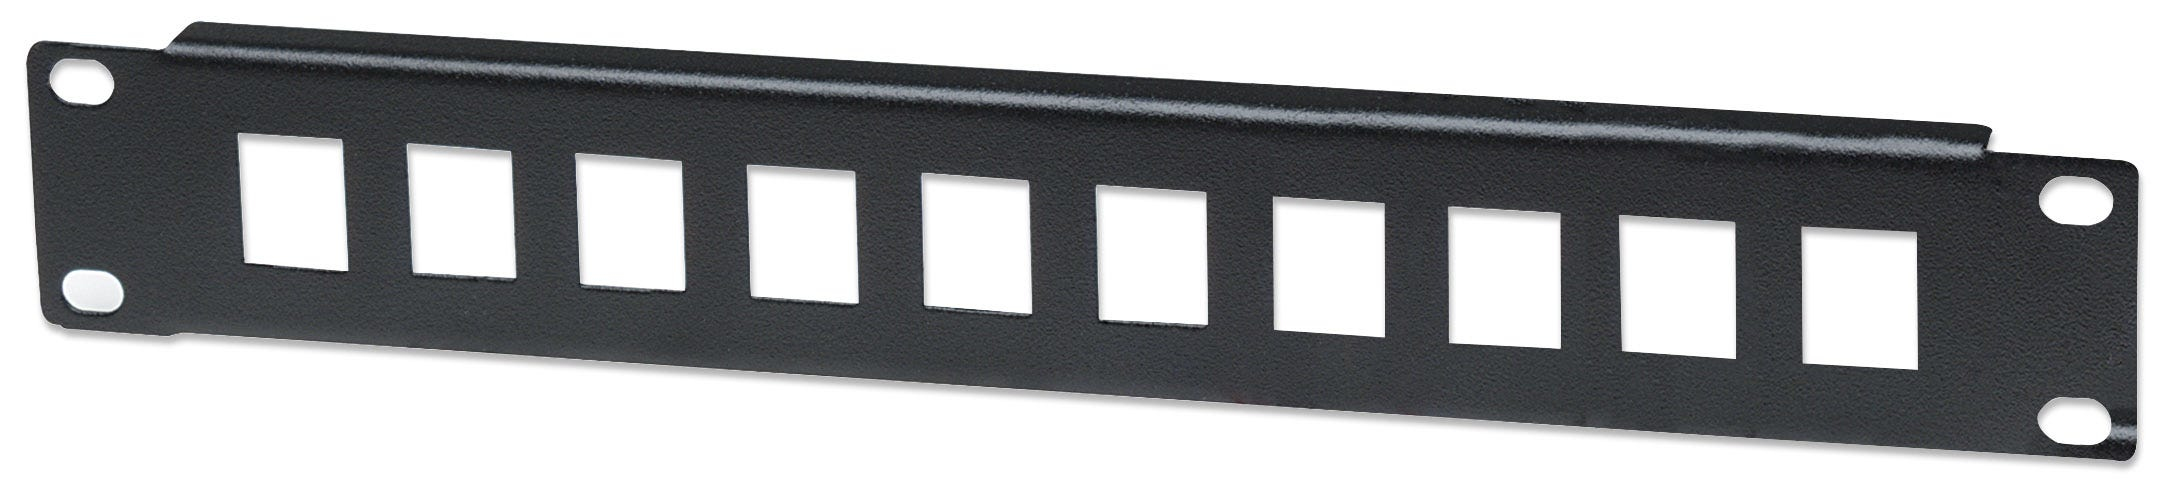 Intellinet 10-Port Patchpanel, unbestückt, 10", 1 HE, schwarz - Blindabdeckung - Rack montierbar - Schwarz, RAL 9005 - 1U - 25.4 cm (10")